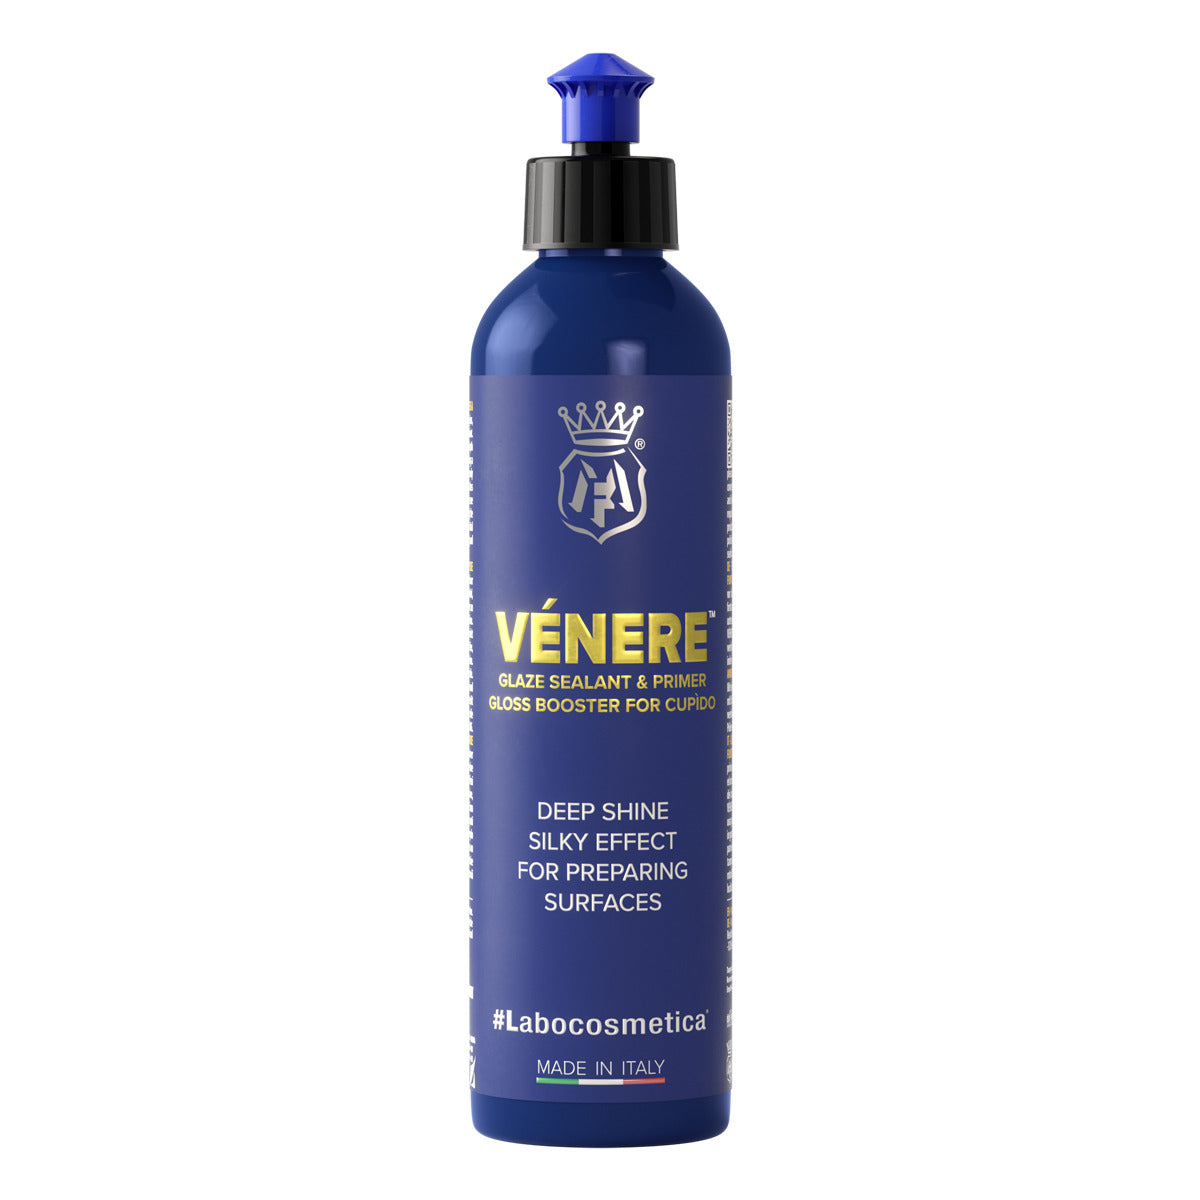 Labocosmetica - VENERE - Glaze Sealant & Primer Booster